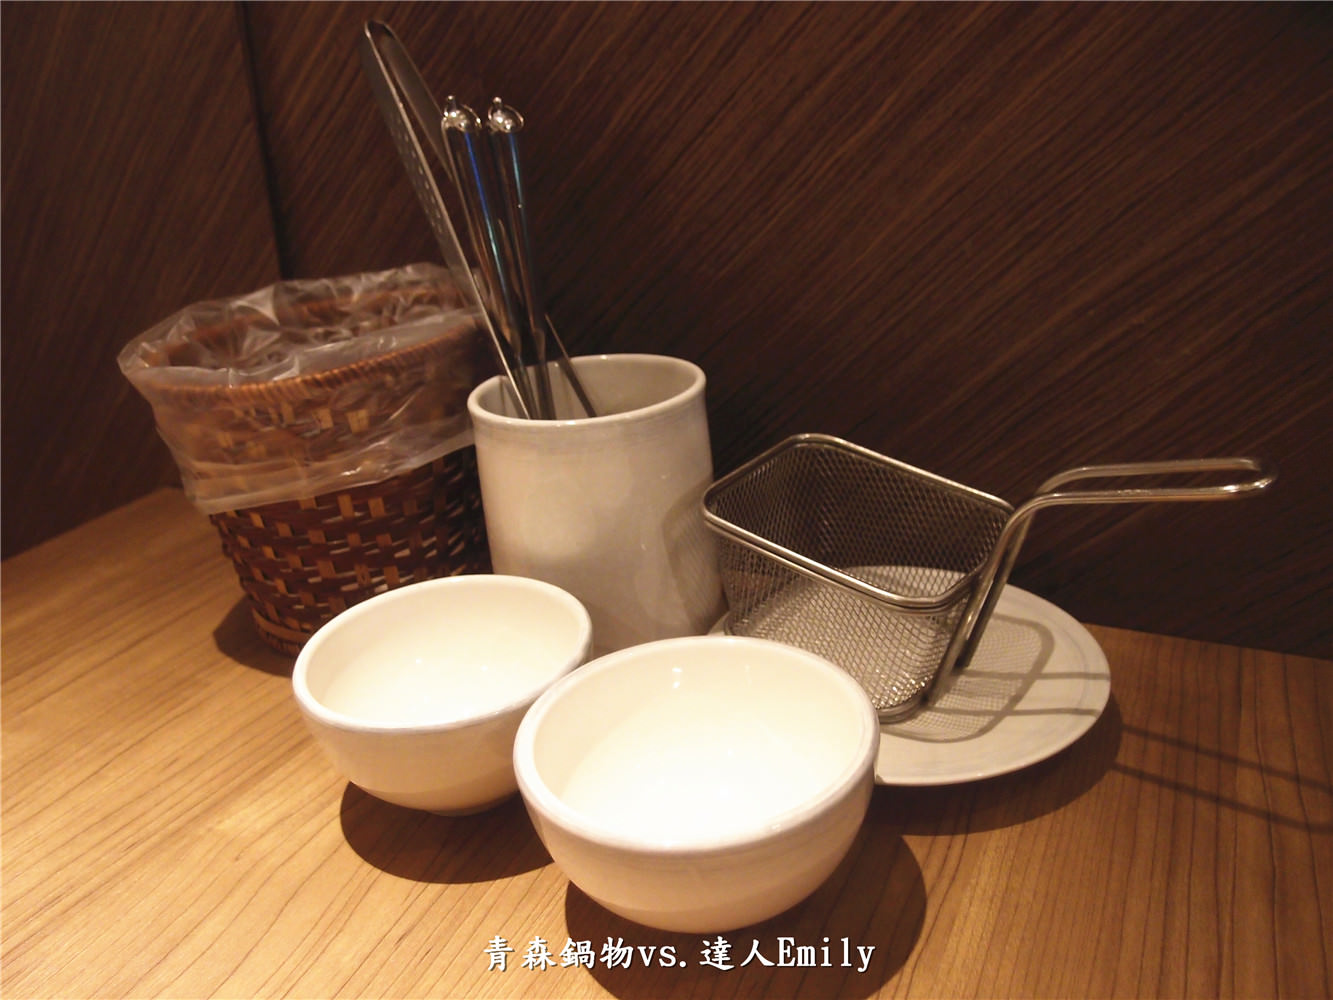 【台中美食】青森鍋物~食材嚴選,裝潢有格調的日式火鍋(還有壽星優惠喔!)